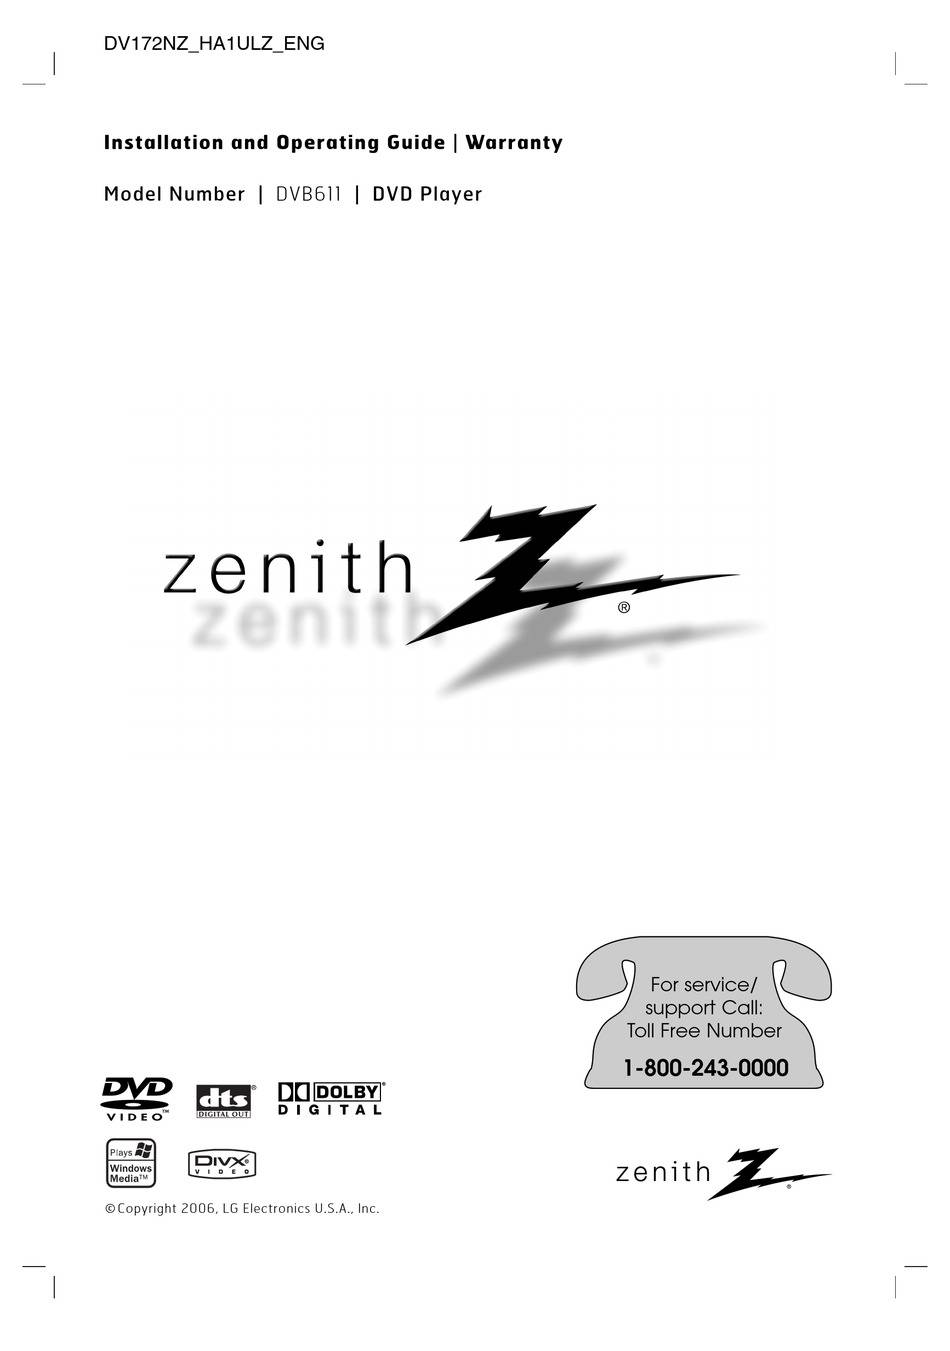 Zenith DVB611